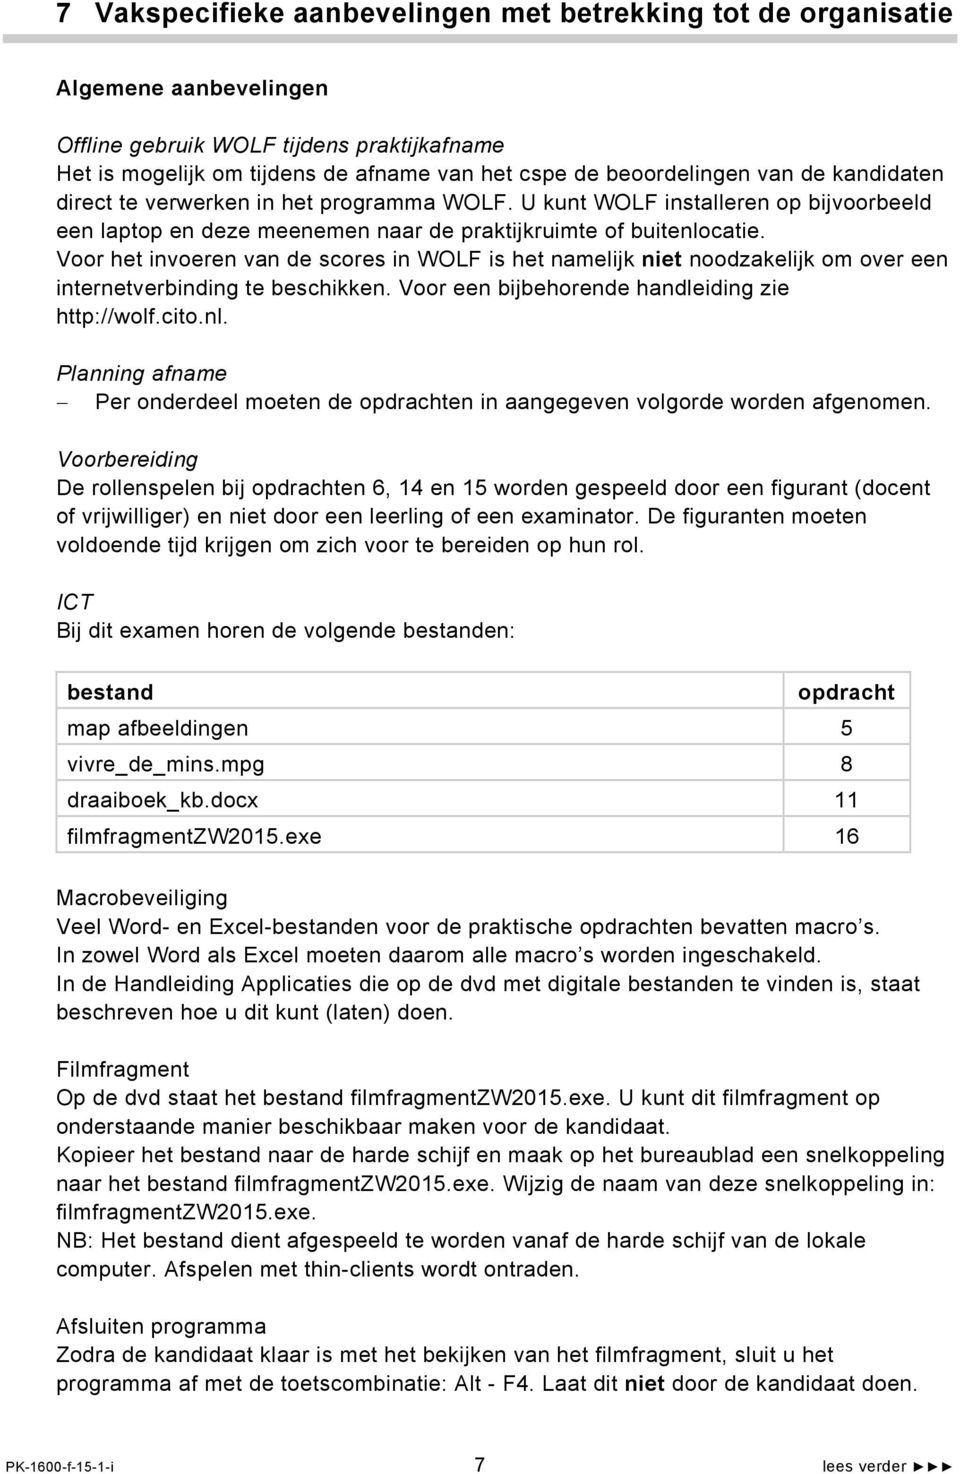 Voor het invoeren van de scores in WOLF is het namelijk niet noodzakelijk om over een internetverbinding te beschikken. Voor een bijbehorende handleiding zie http://wolf.cito.nl.